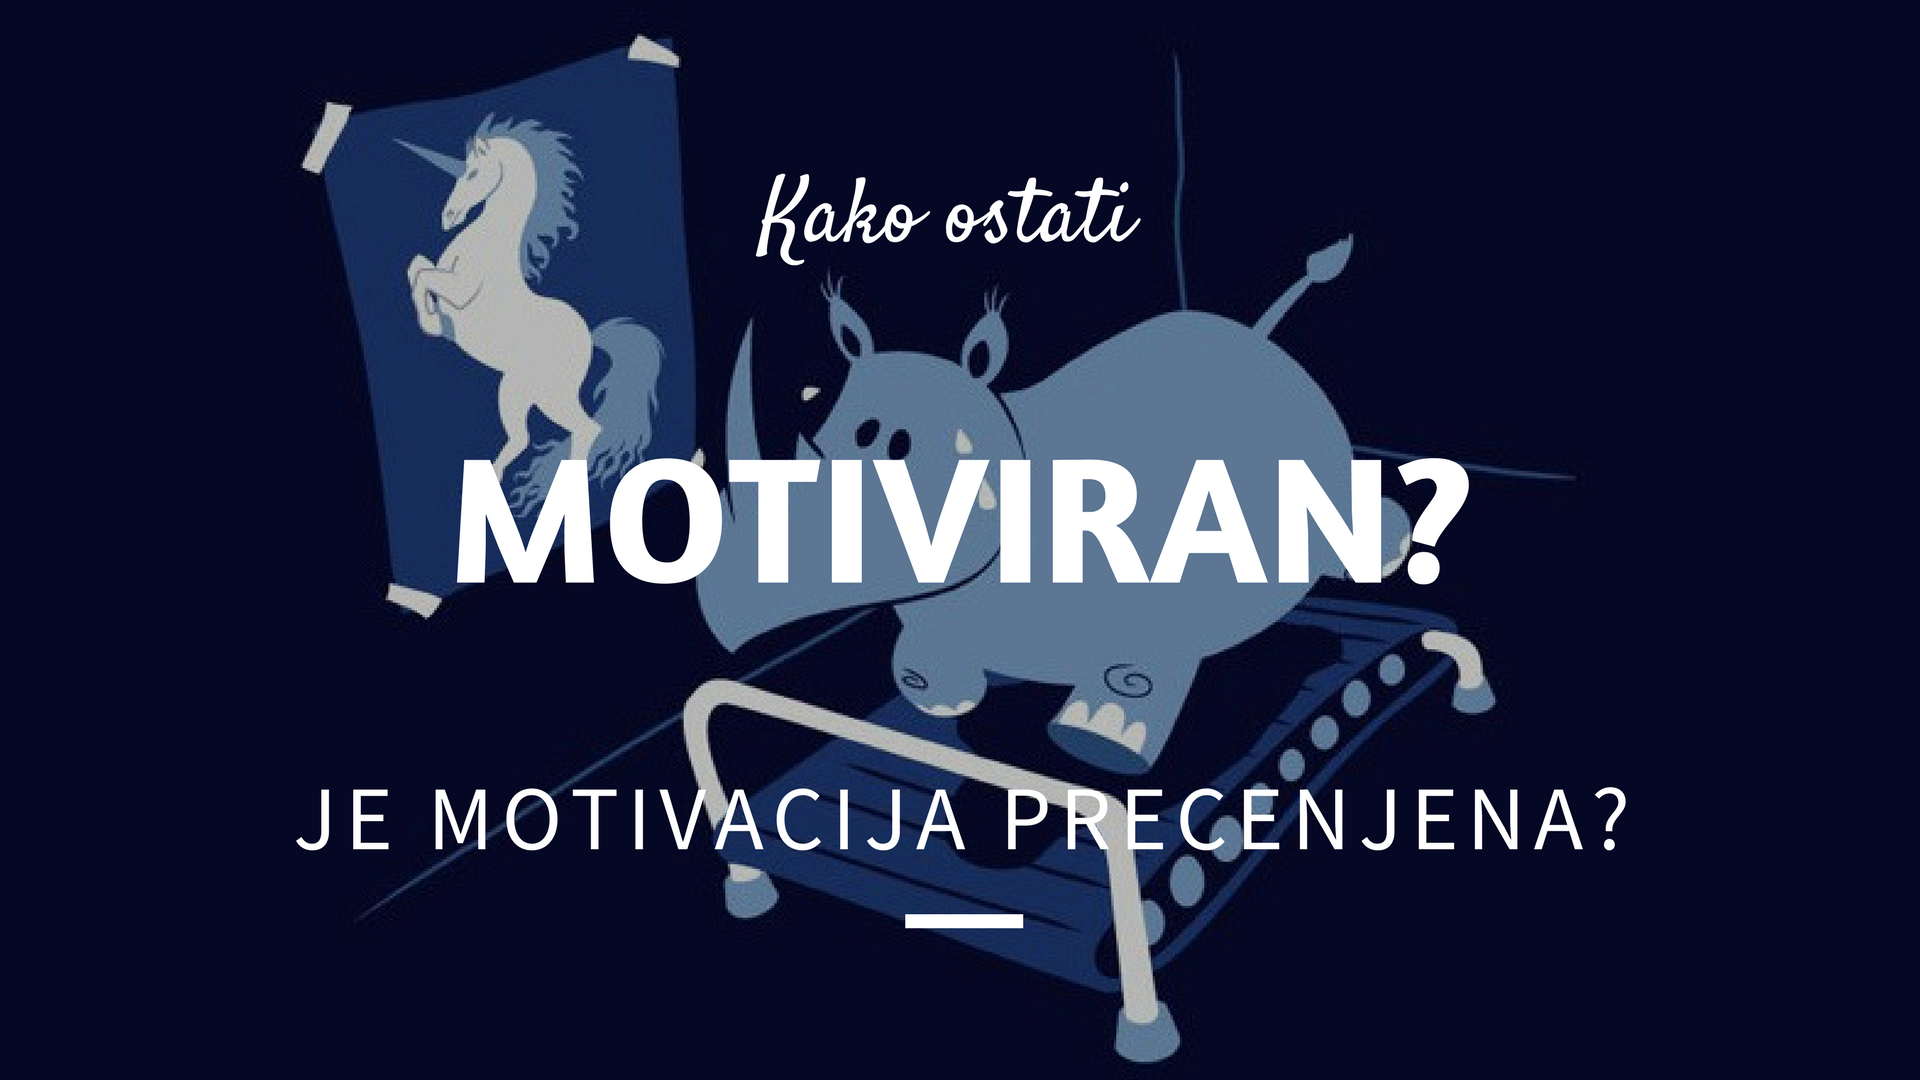 You are currently viewing Kako ostati motiviran? Je motivacija precenjena?